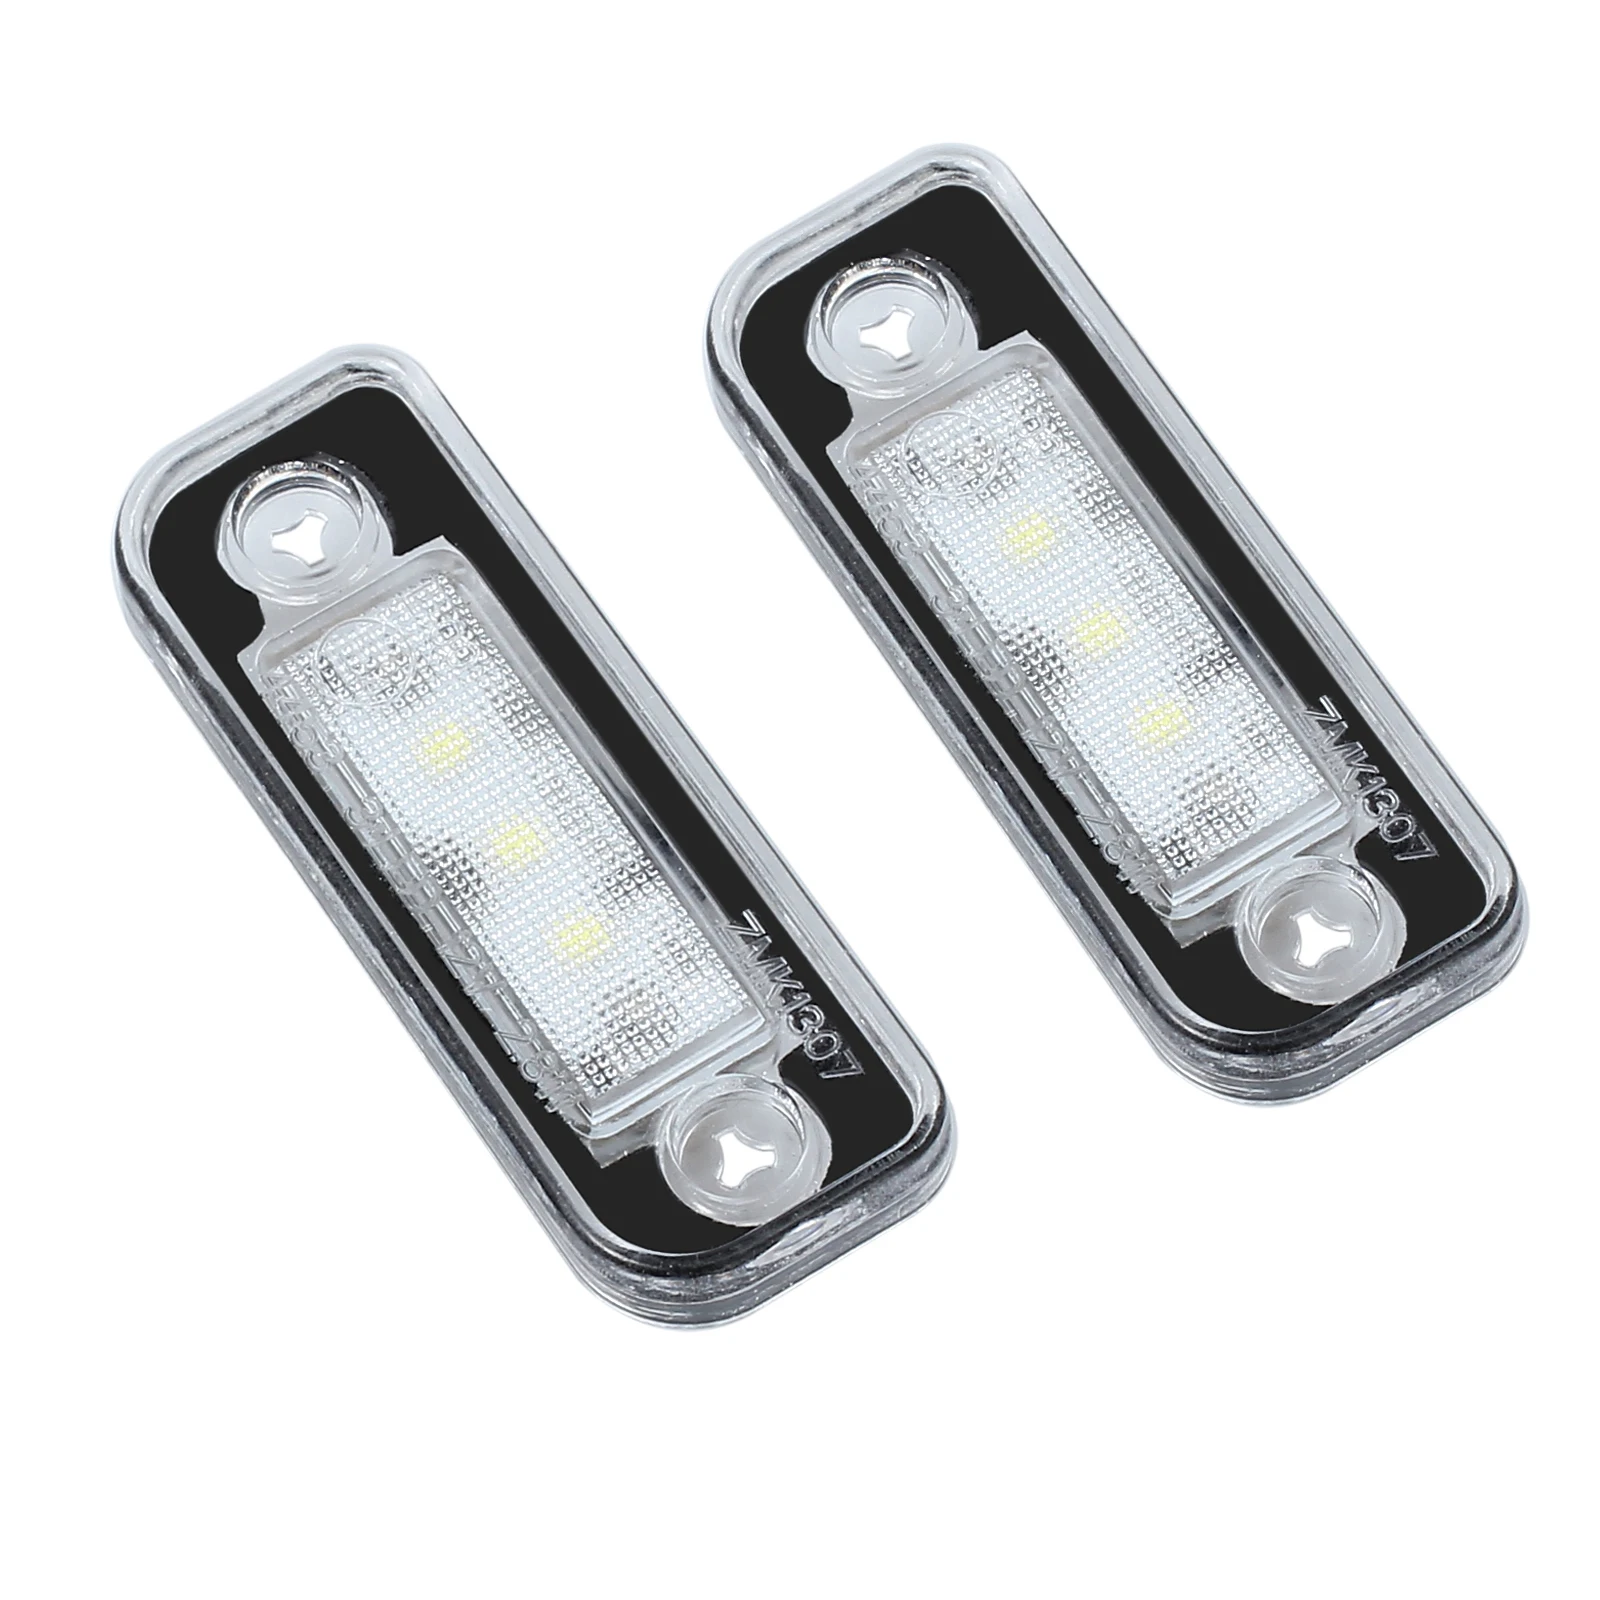 Justech 2 Pcs License Plate Light Lighting Lamps Bulbs 7000K White 3 SMD LEDs for Mercedes Benz SLK R171 S203 W211 S211 / 1103